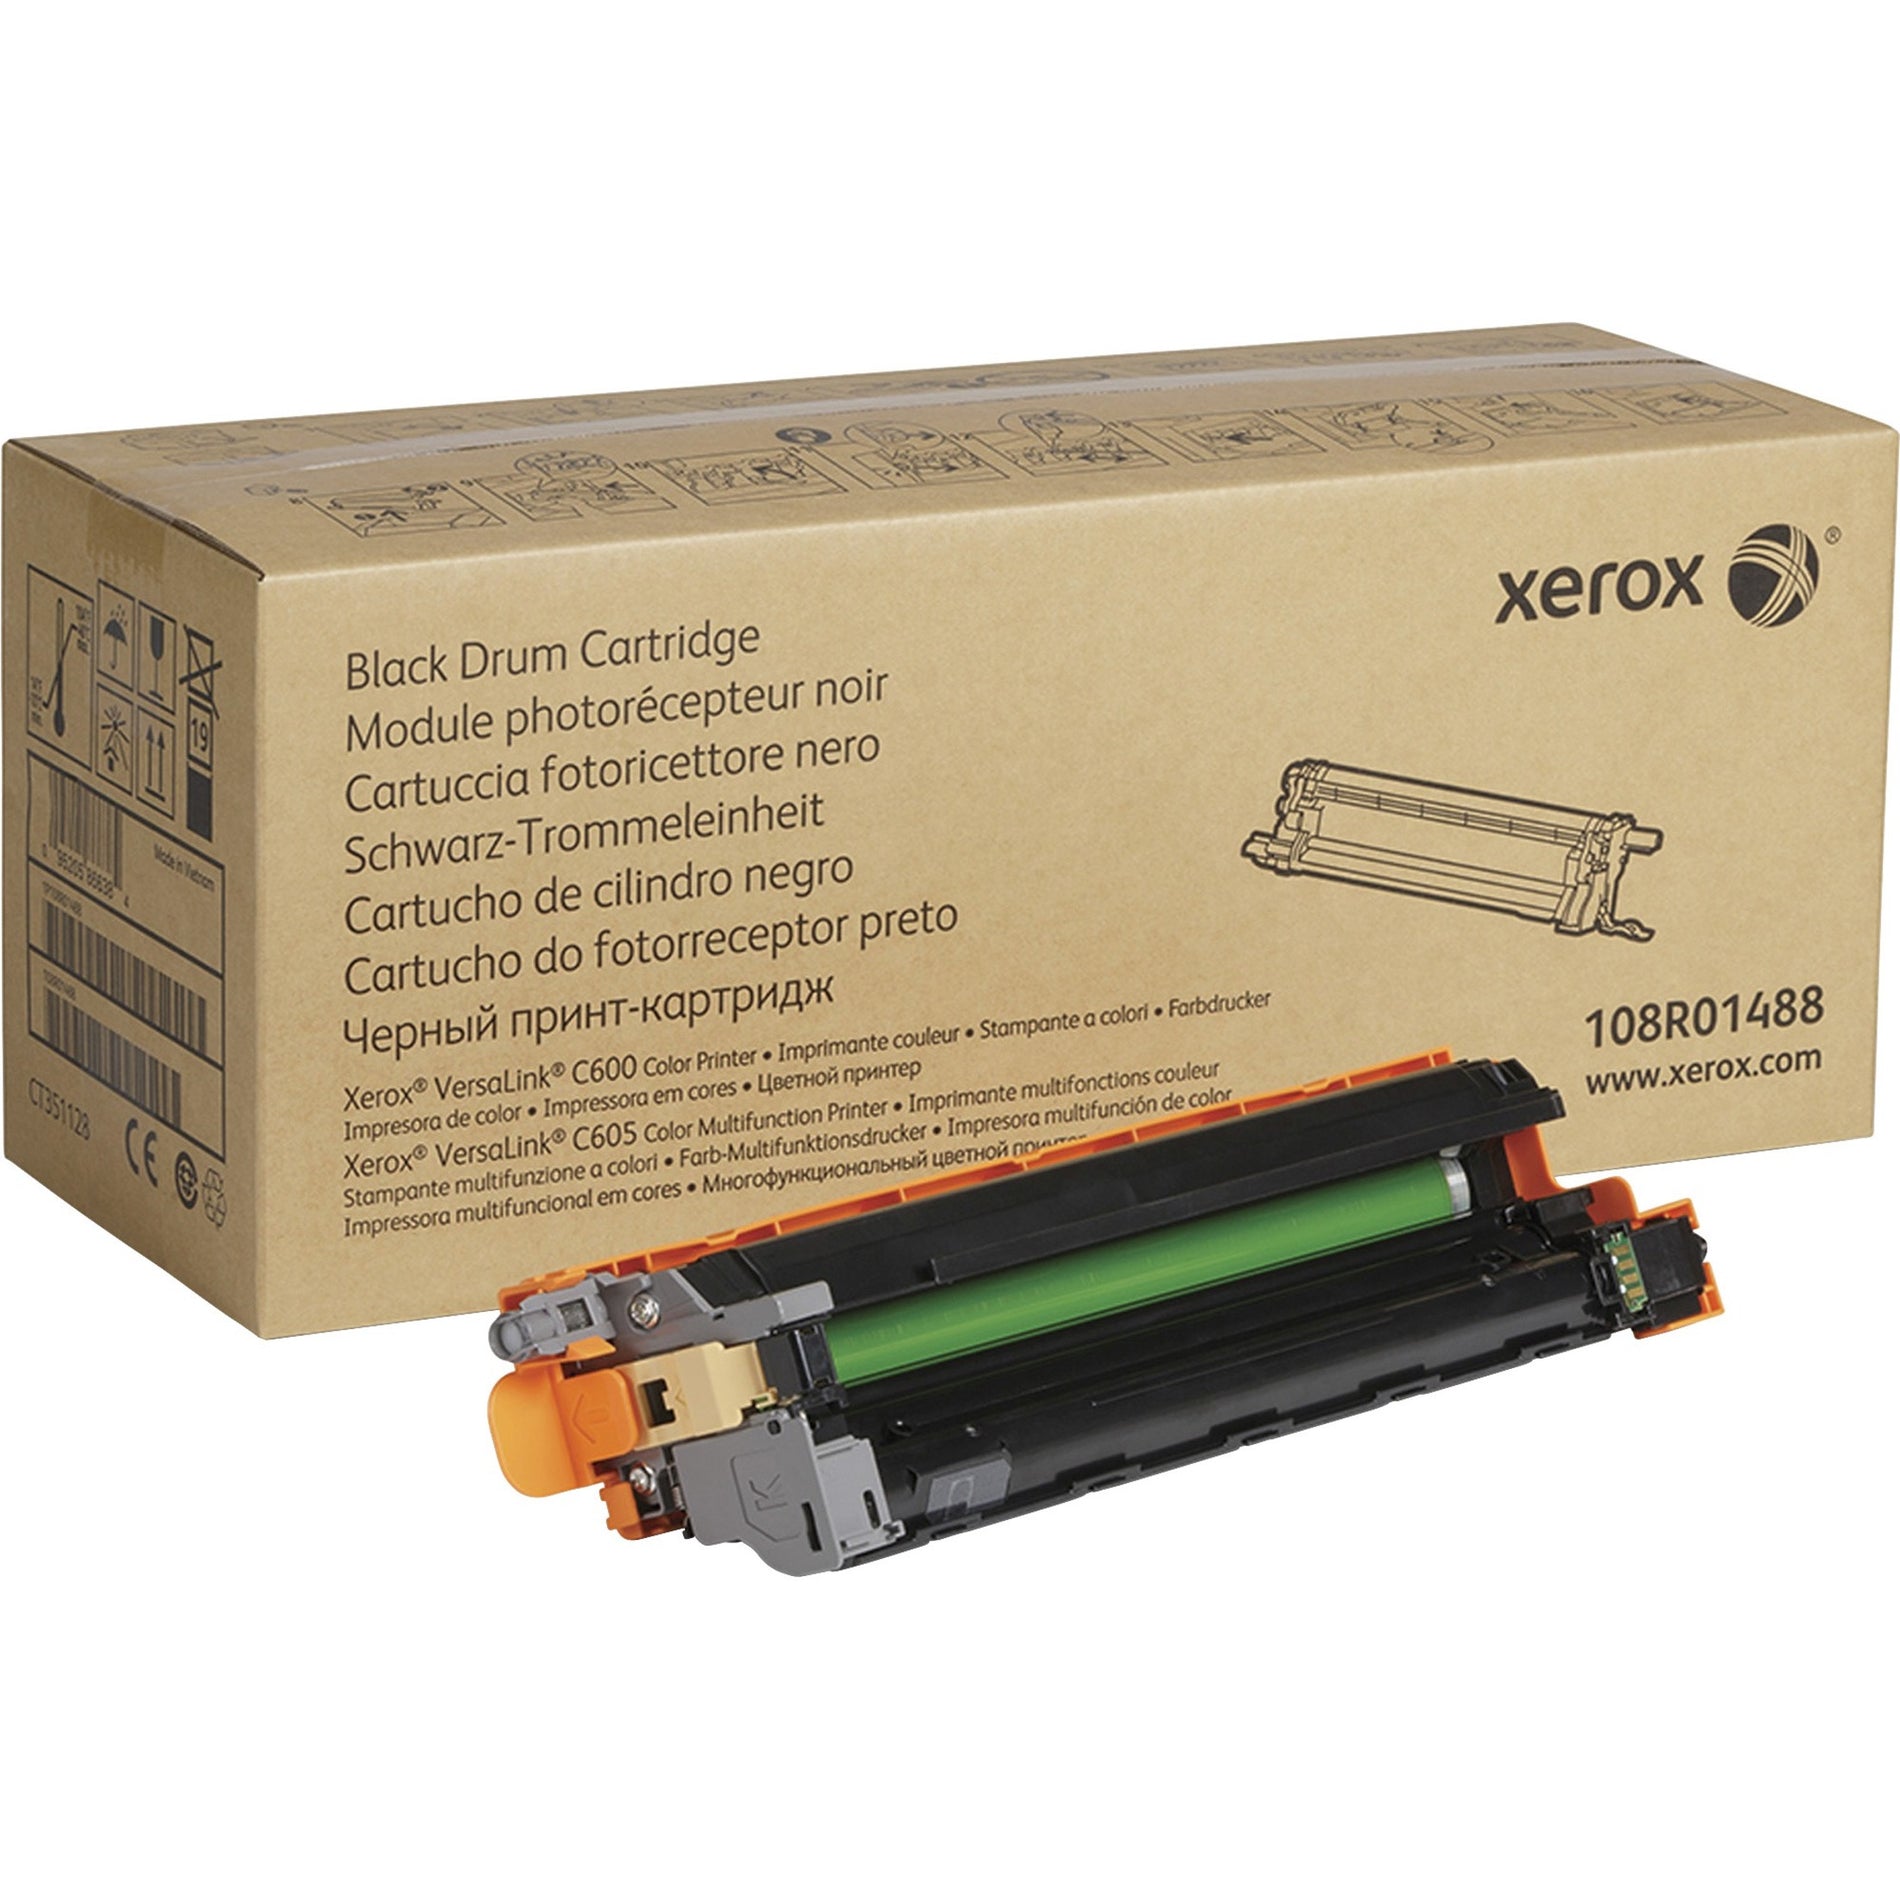 Xerox 108R01488 VersaLink C600/C605 Drum Cartridge, 40,000 Page Yield, Black